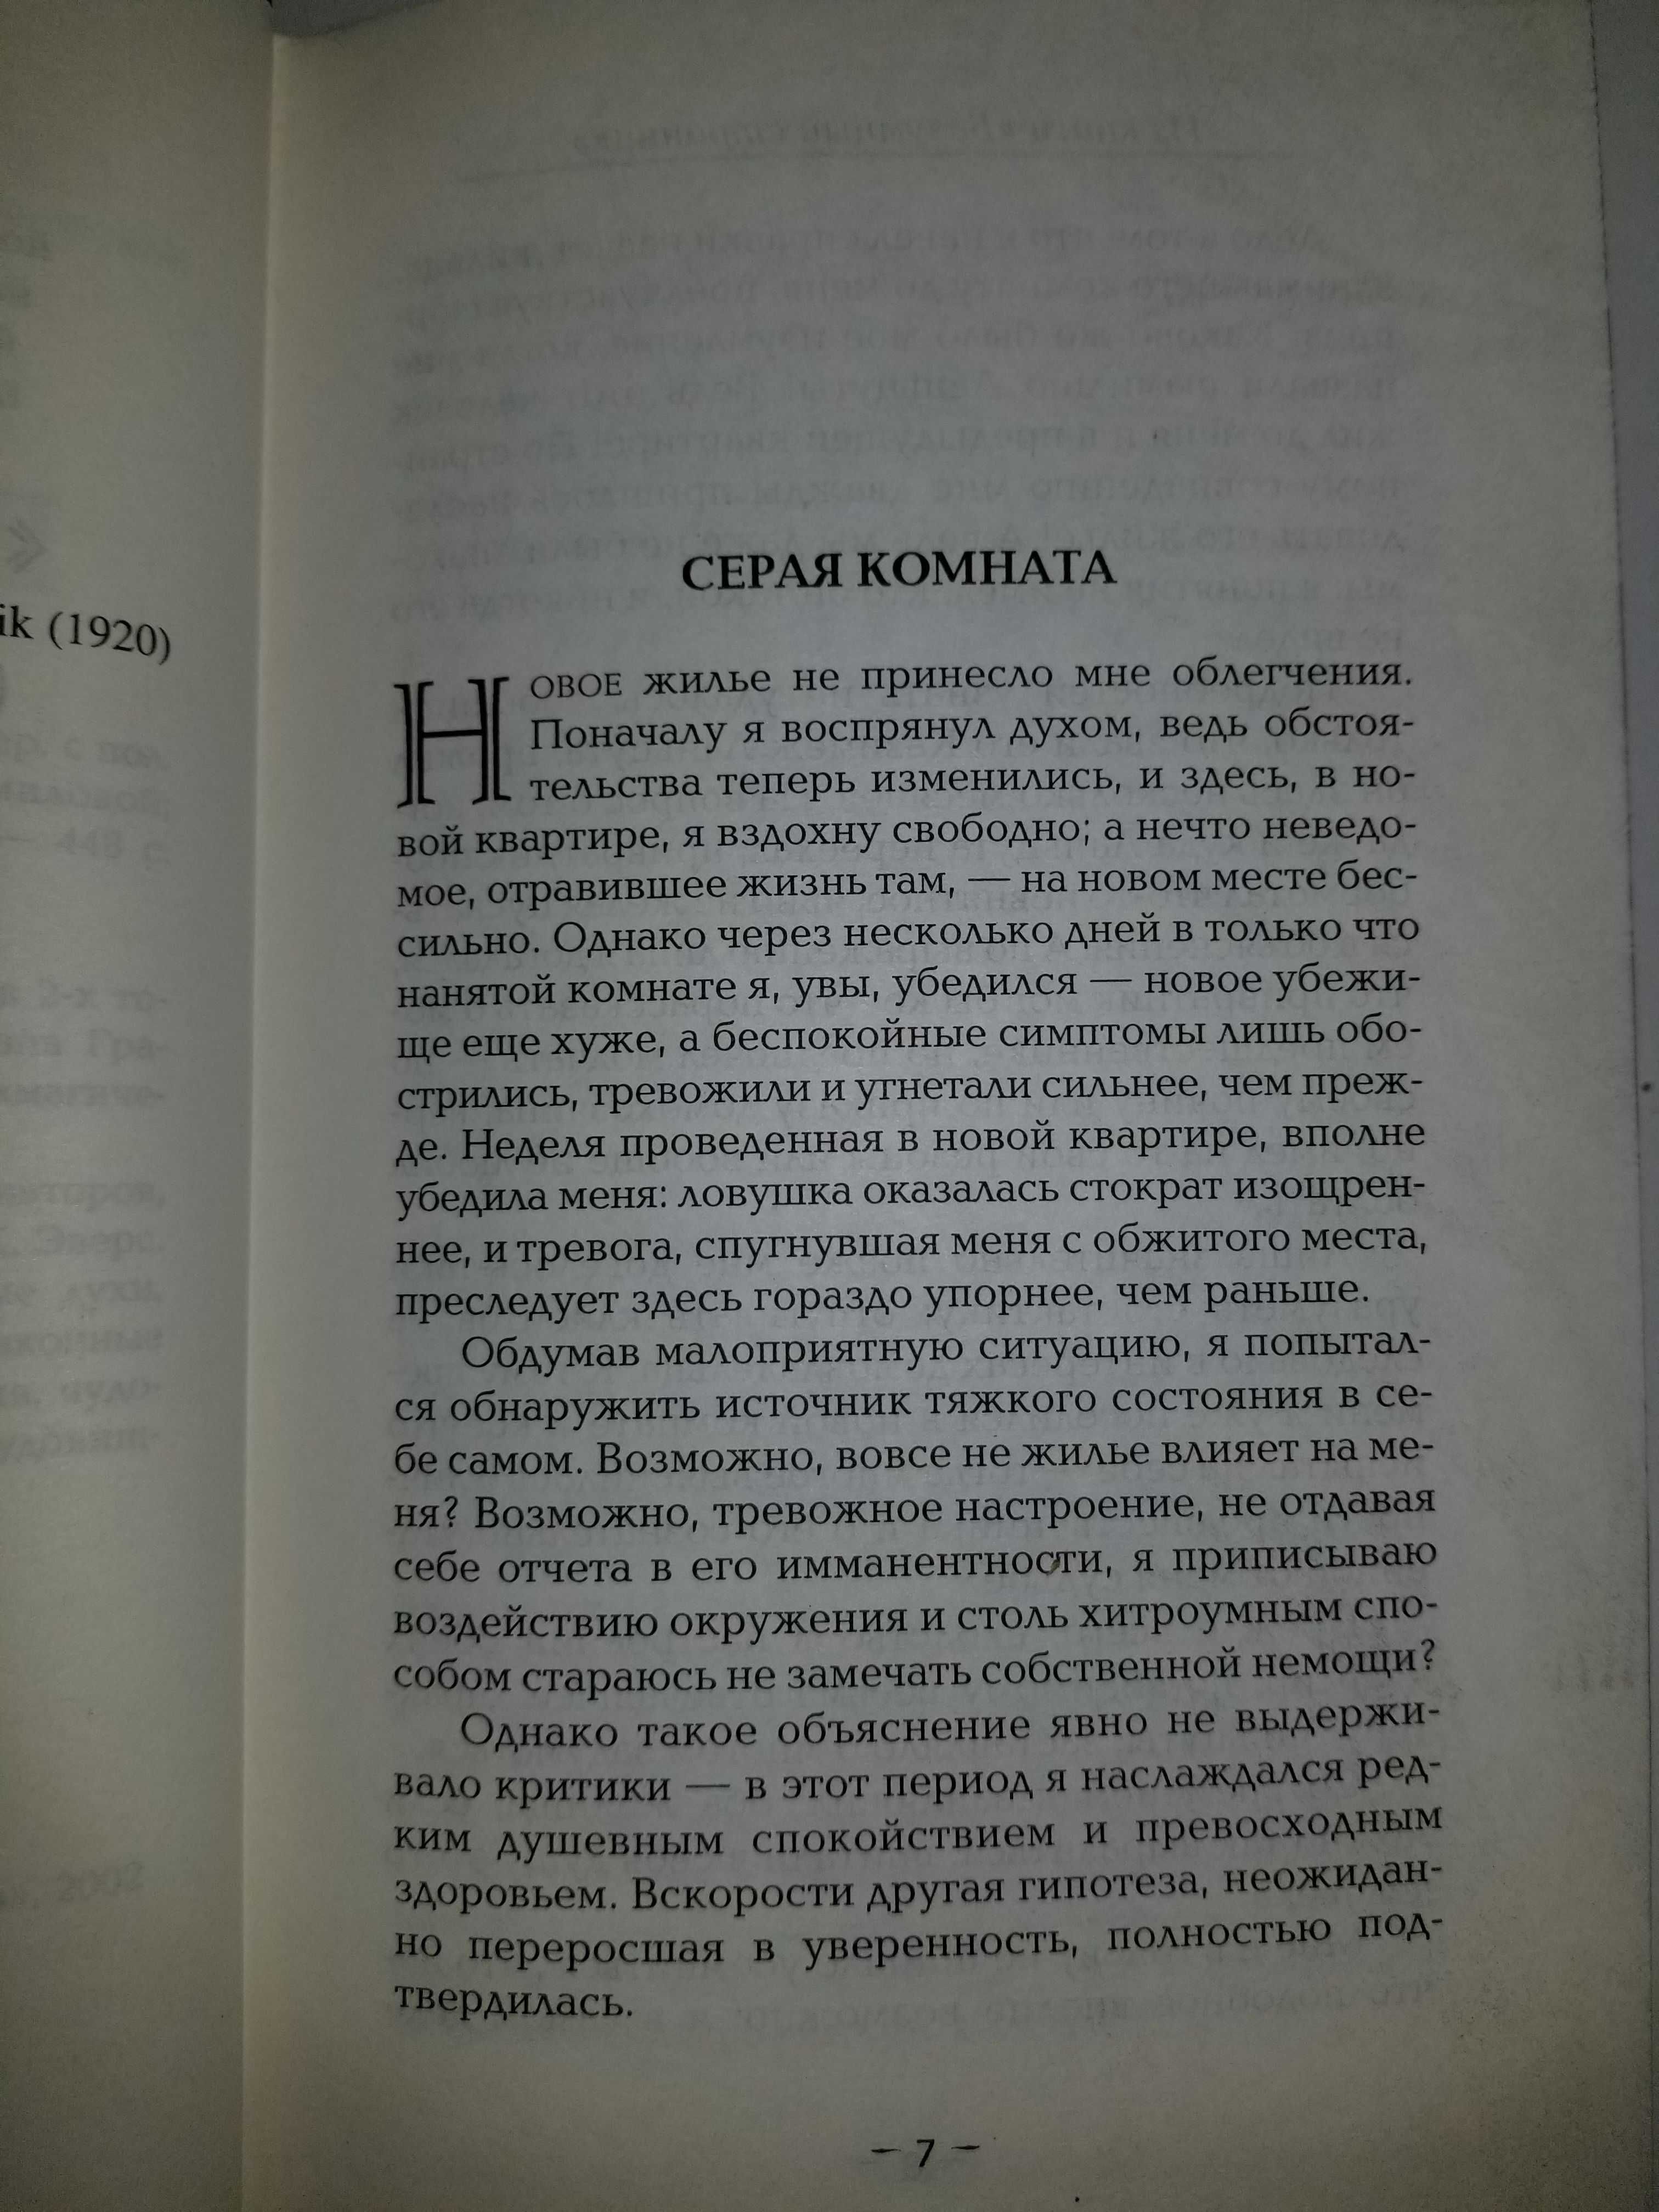 Стефан Грабинский, книги